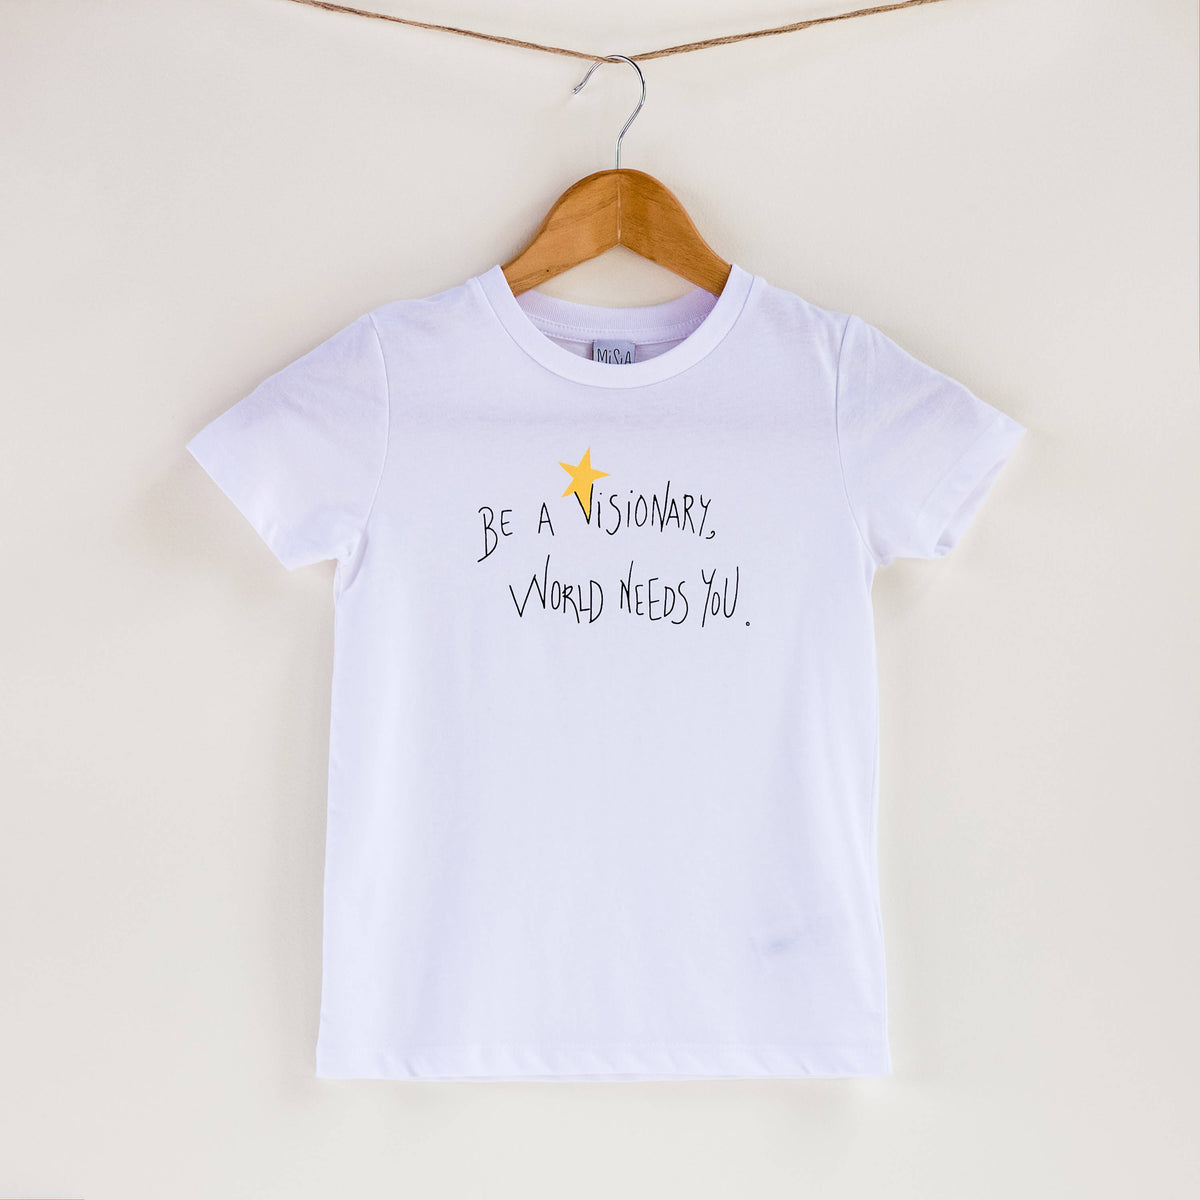 Camiseta blanca de algodón orgánico para niños, estampado a mano con tintas ecológicas. Serigrafía en color negro y amarillo. Modelo unisex.